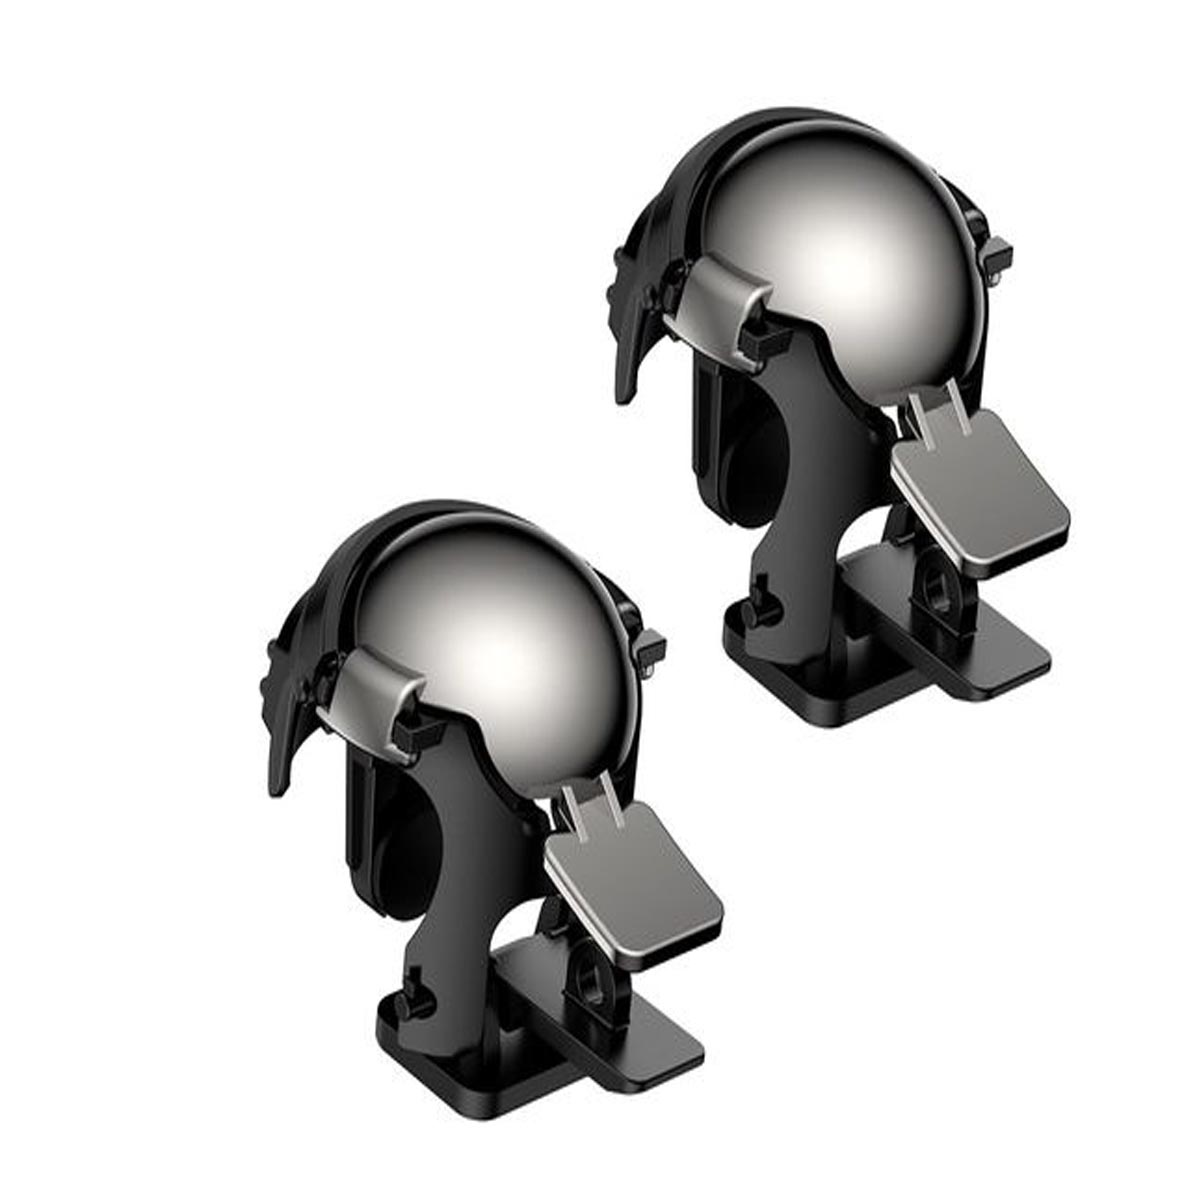 Геймпад-триггер BASEUS GMGA03-A01 Level 3 Helmet PUBG Gadget, цвет черный